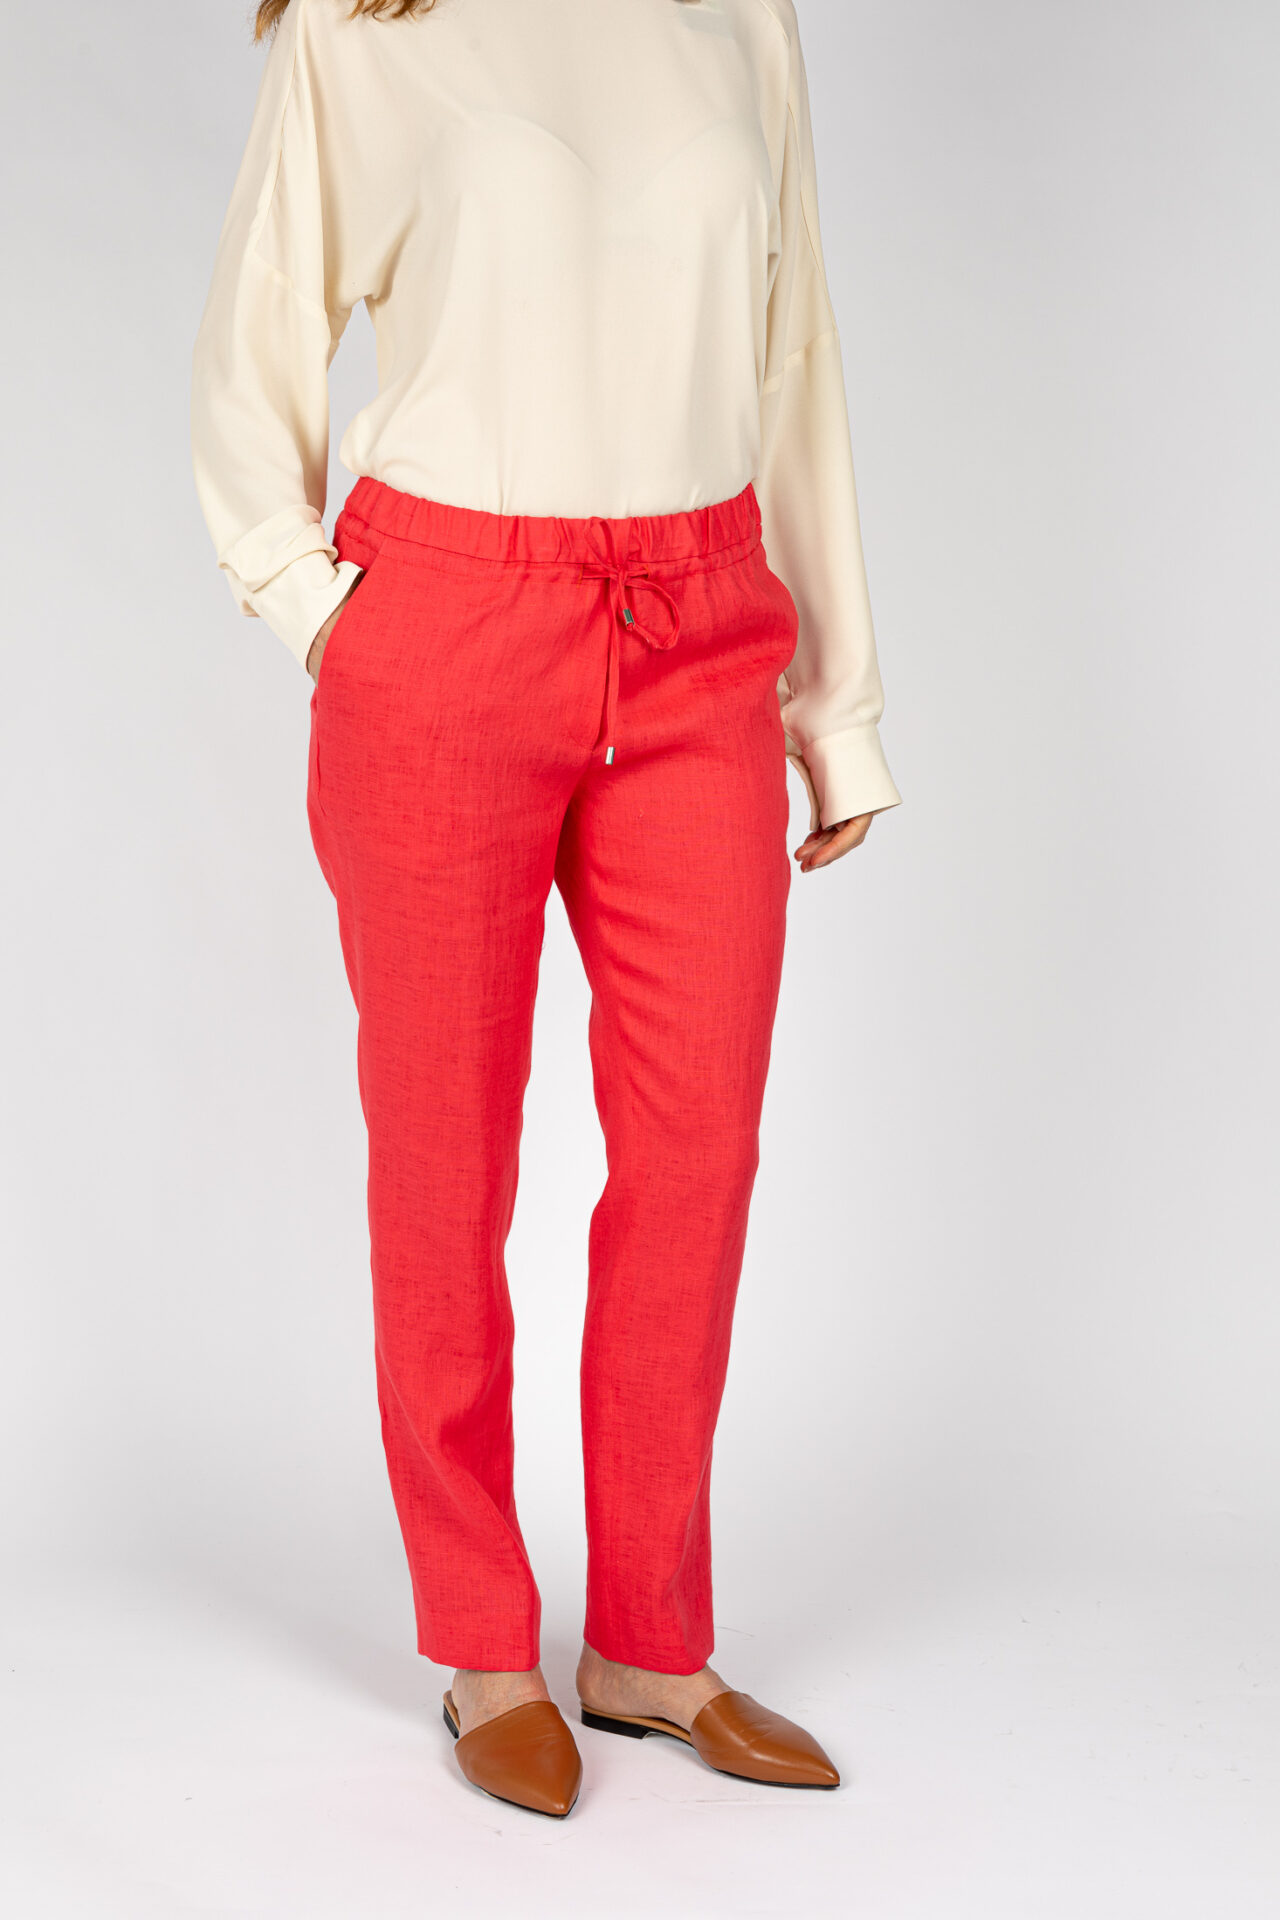 Pantaloni linea morbida, da donna in colore corallo P19667R - 2